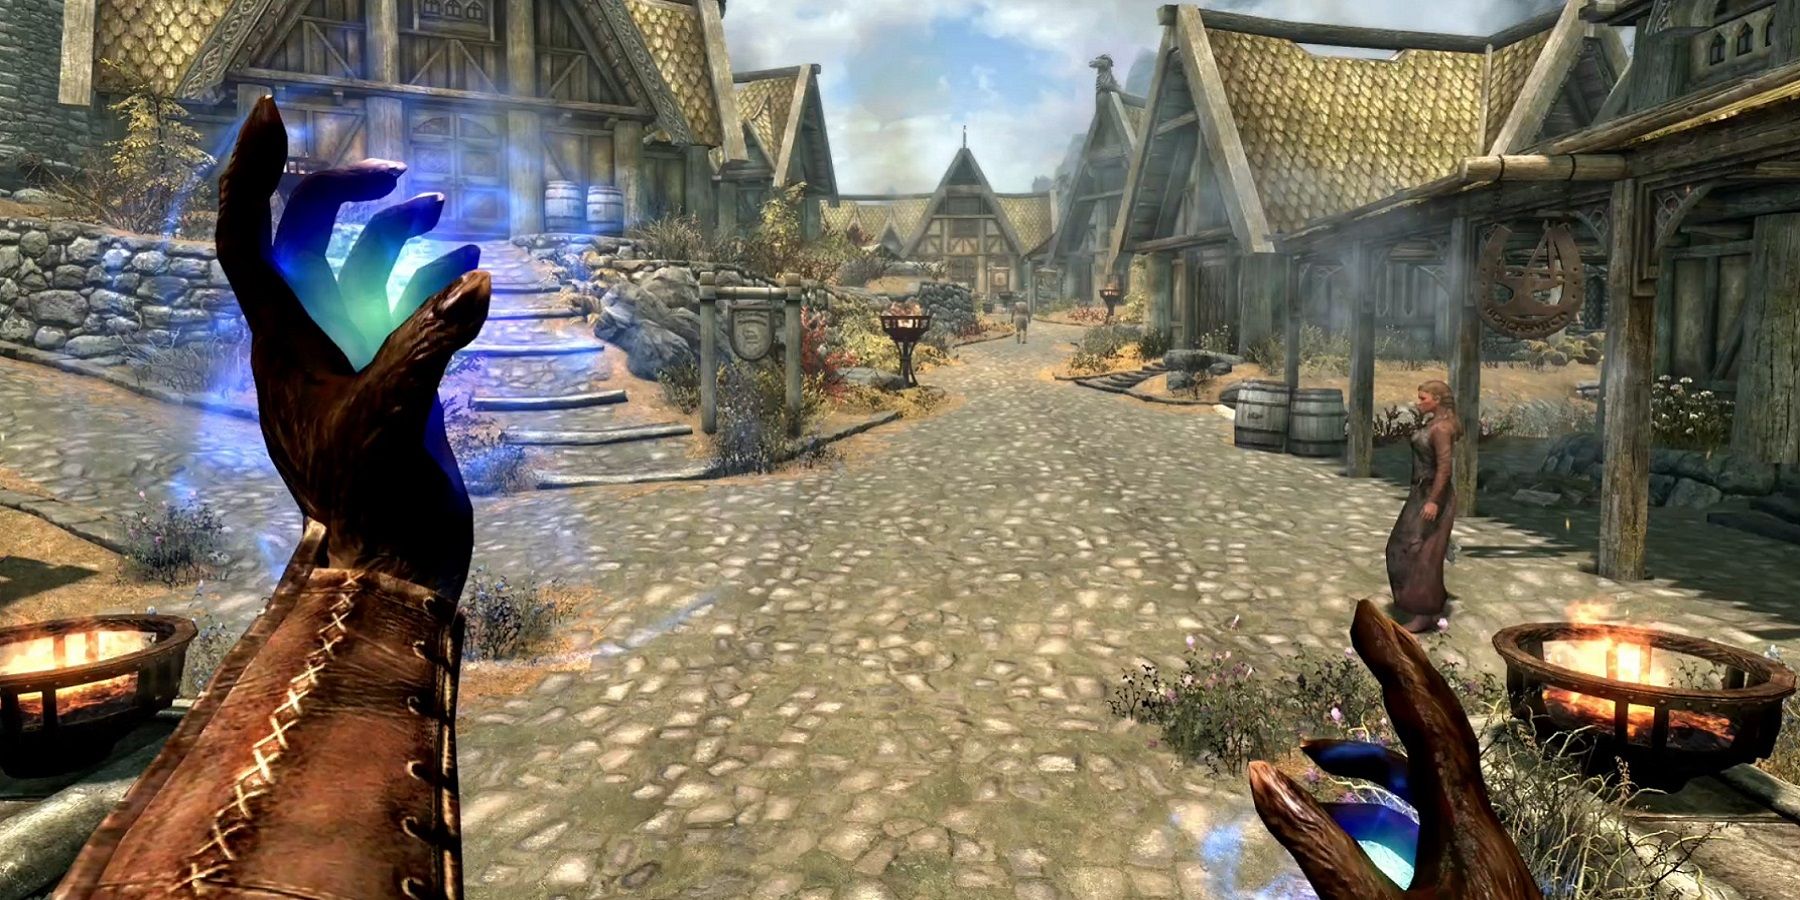 Afbeelding uit Skyrim waarop te zien is hoe de speler magie brouwt in de stad Whiterun.